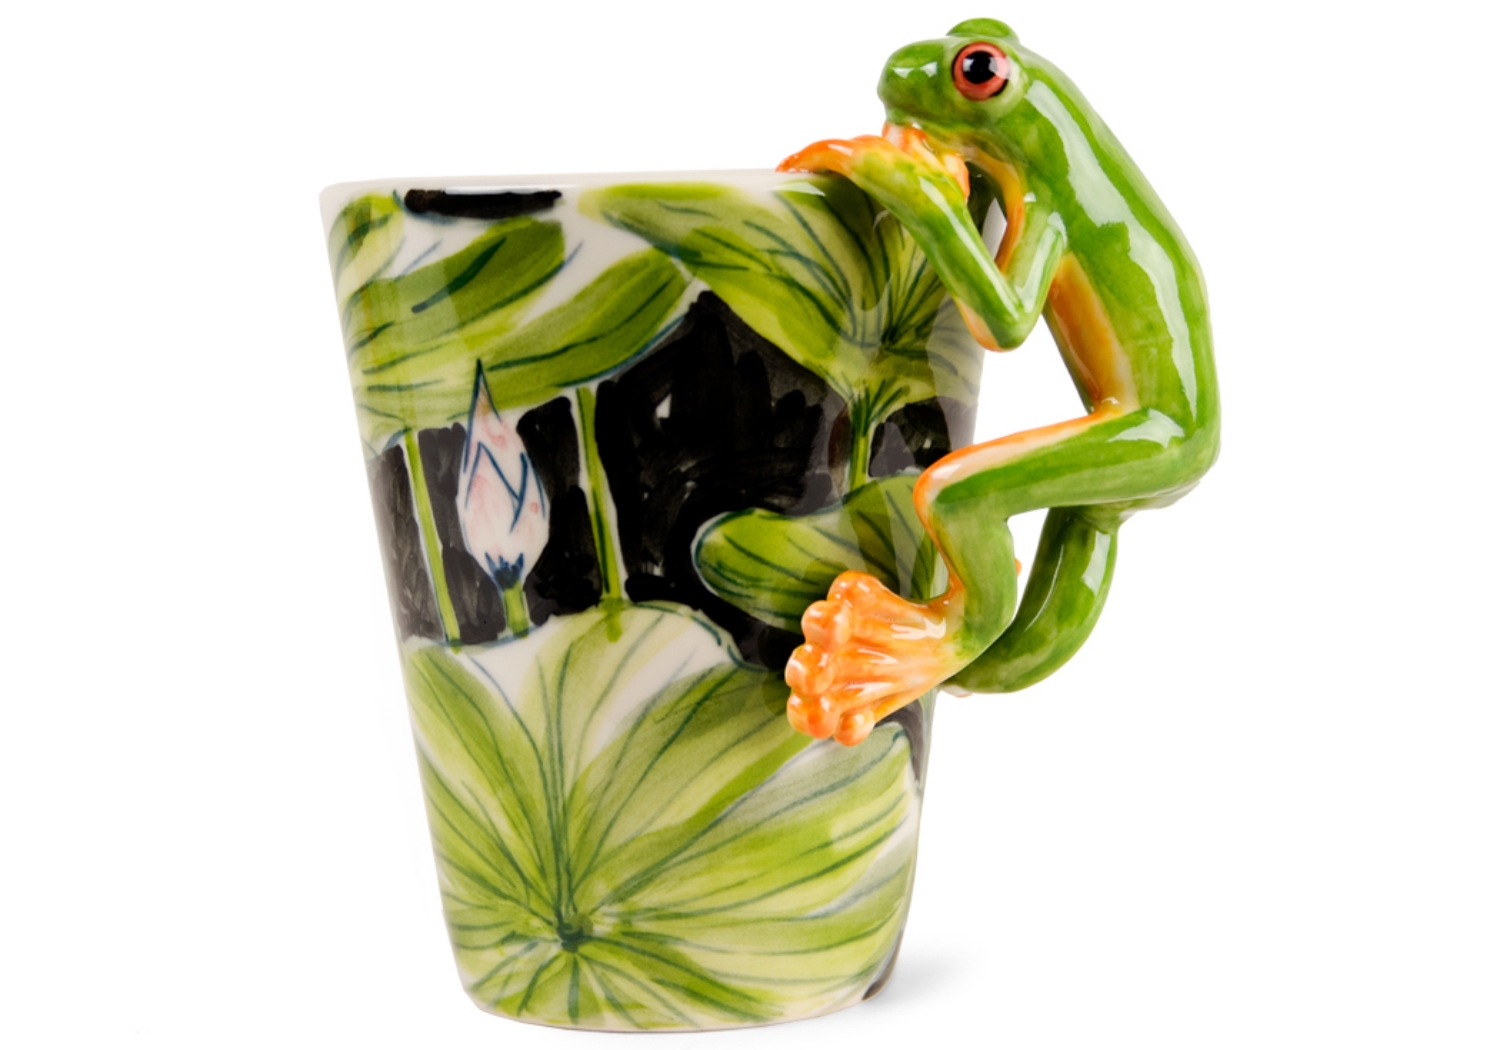 Frog Coffee Mug